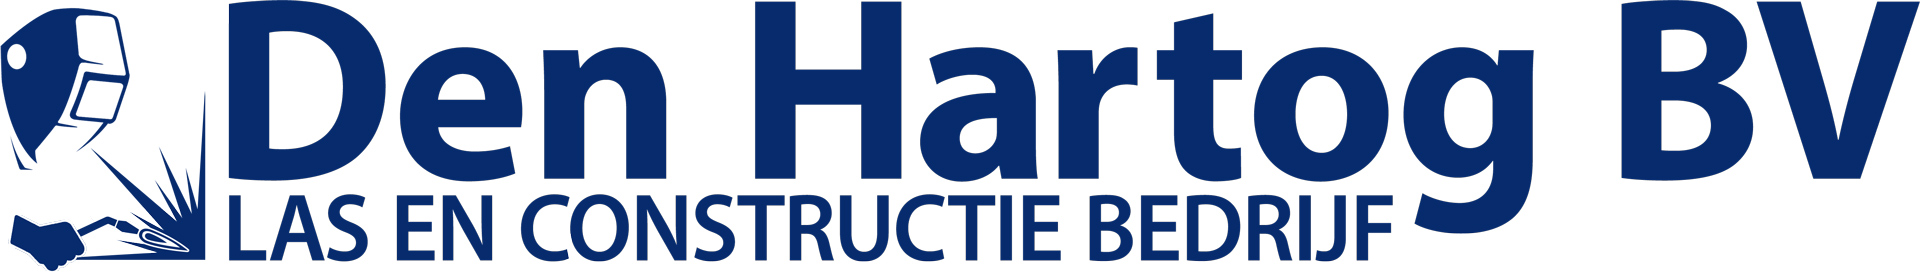 Den Hartog - Las en Constructie Bedrijf